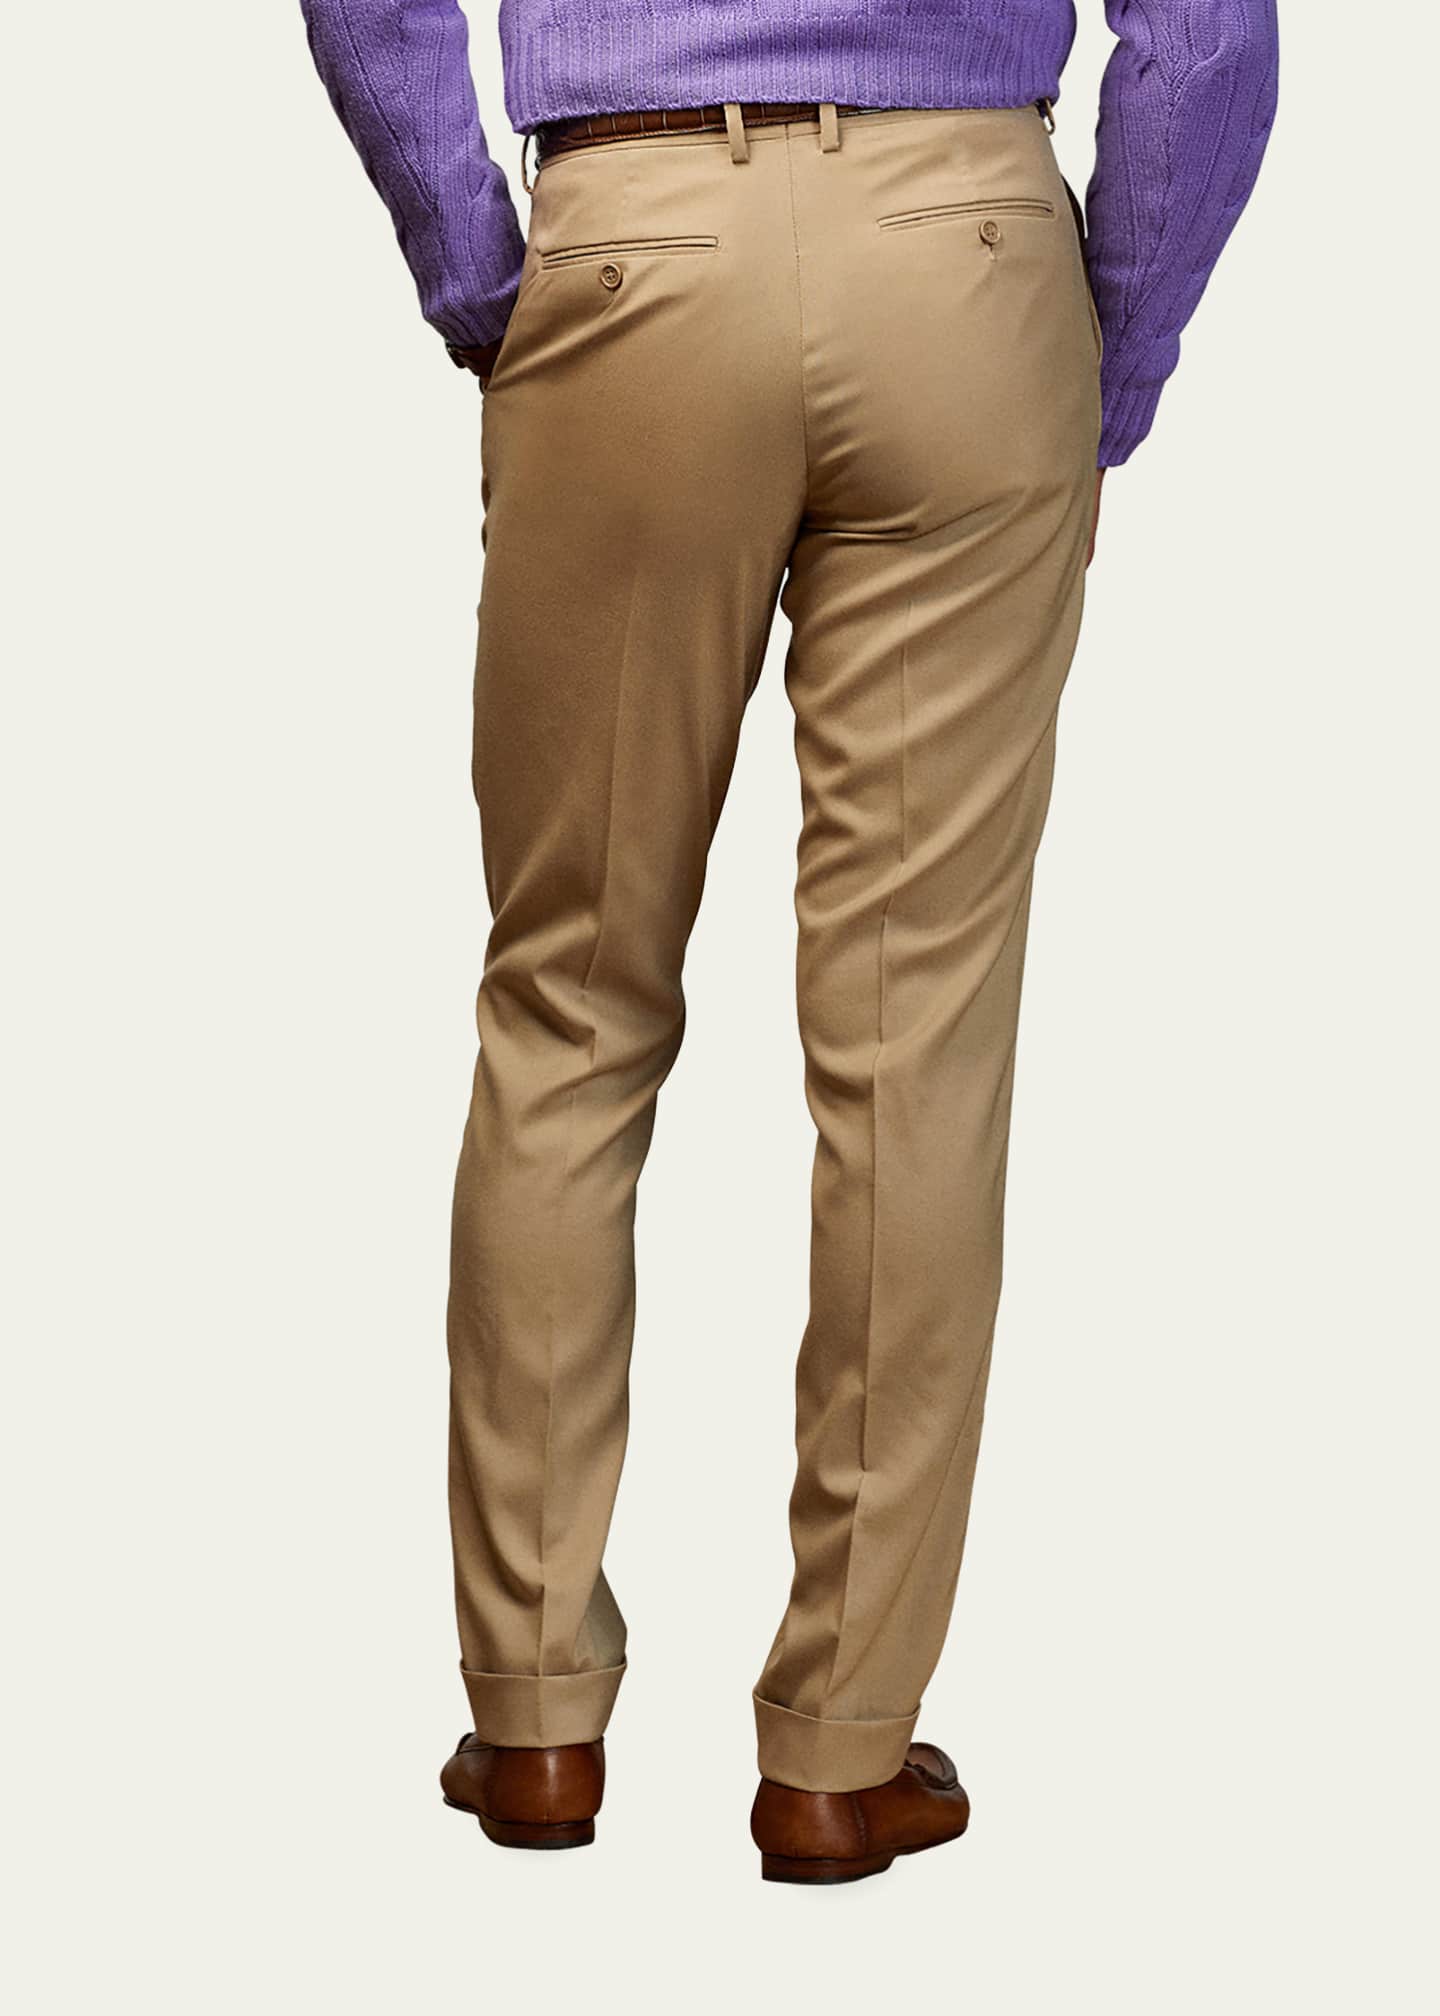 Ralph Lauren Purple Label Men's Glenn Floral Linen Trousers